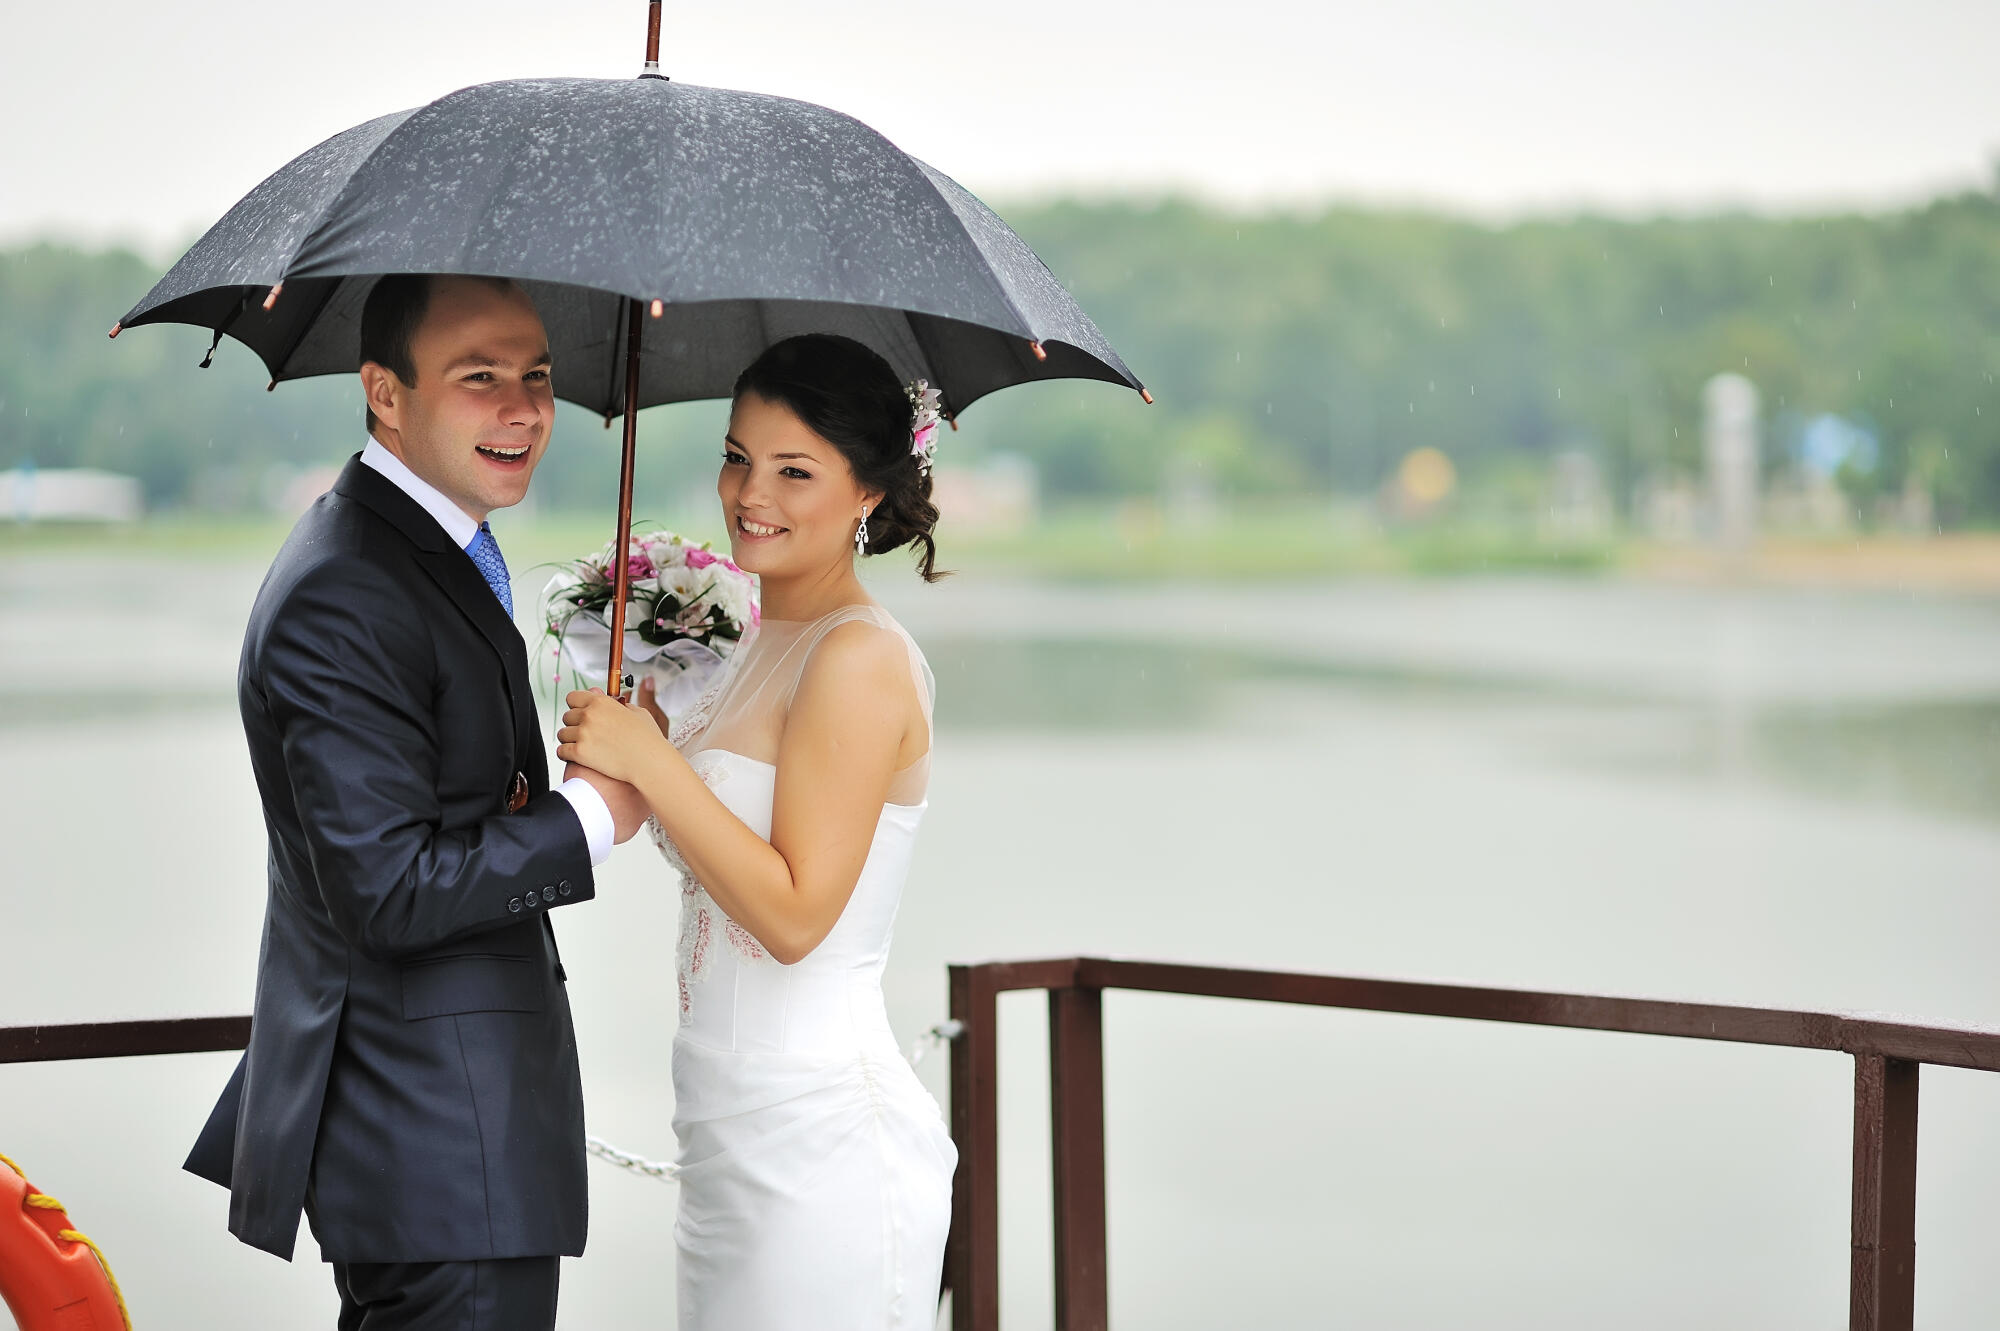 Weatherproofing Your Wedding